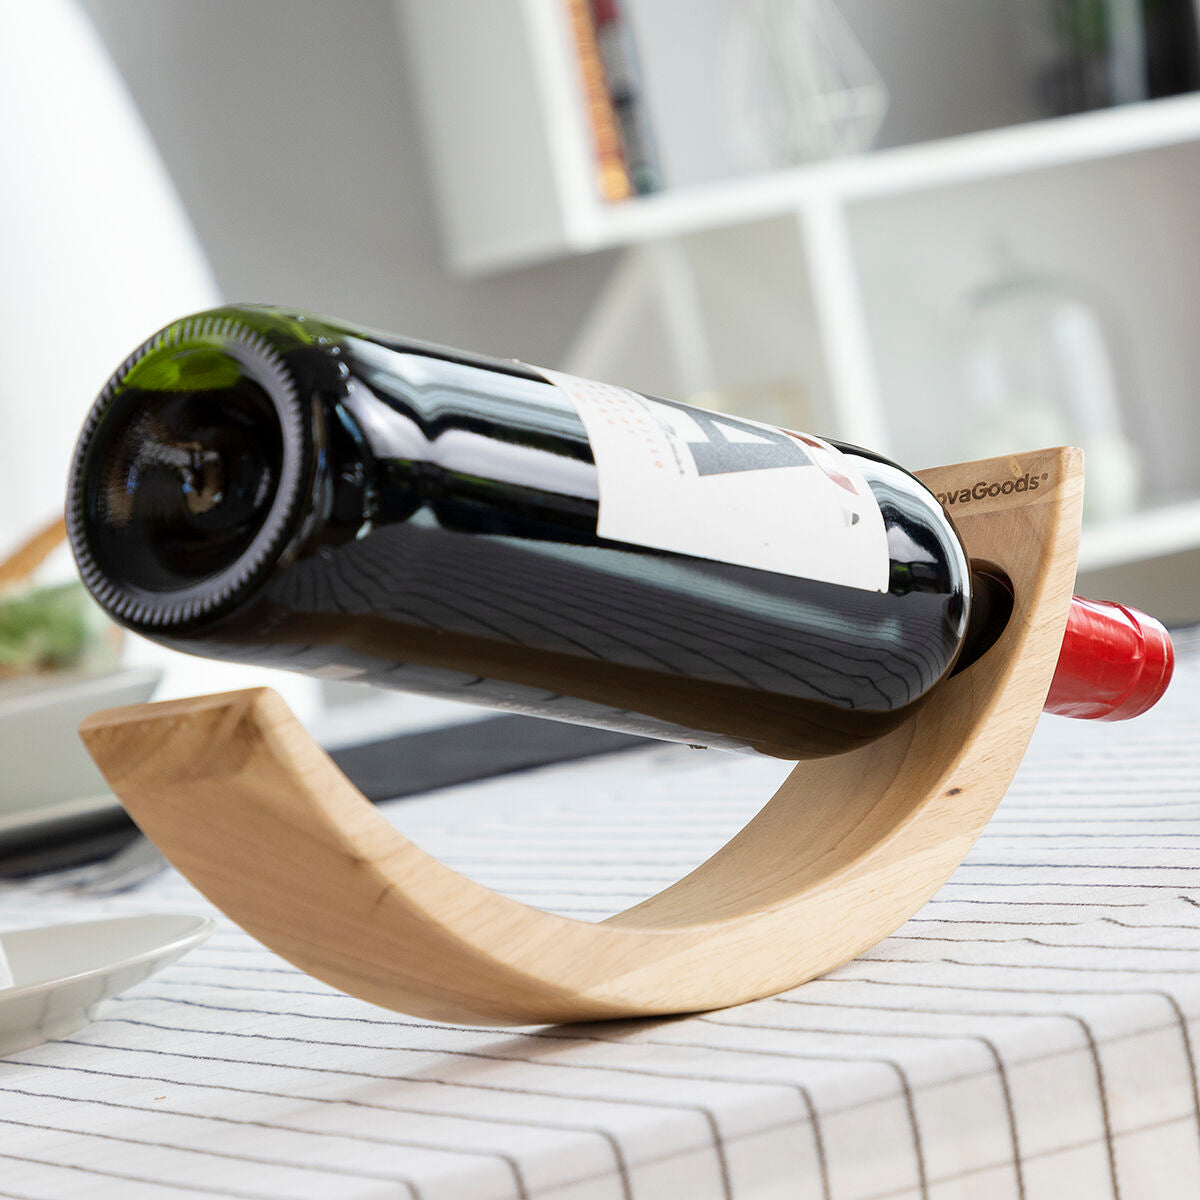 Pendelnder Weinflaschenhalter aus Holz Woolance InnovaGoods